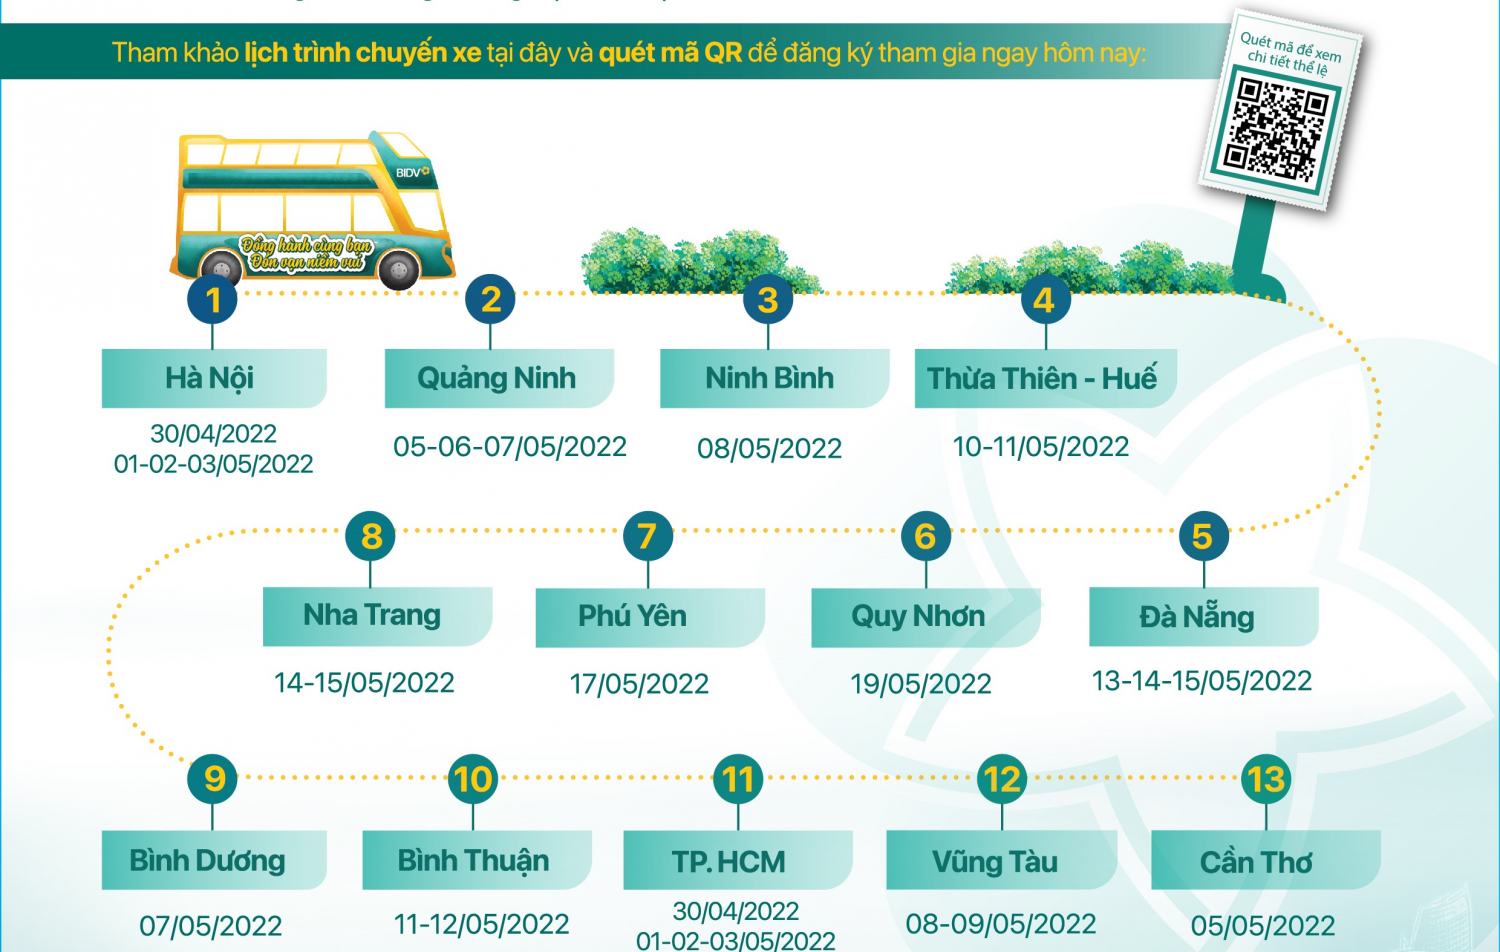 Trải nghiệm miễn phí xe bus 2 tầng xuyên Việt cùng BIDV